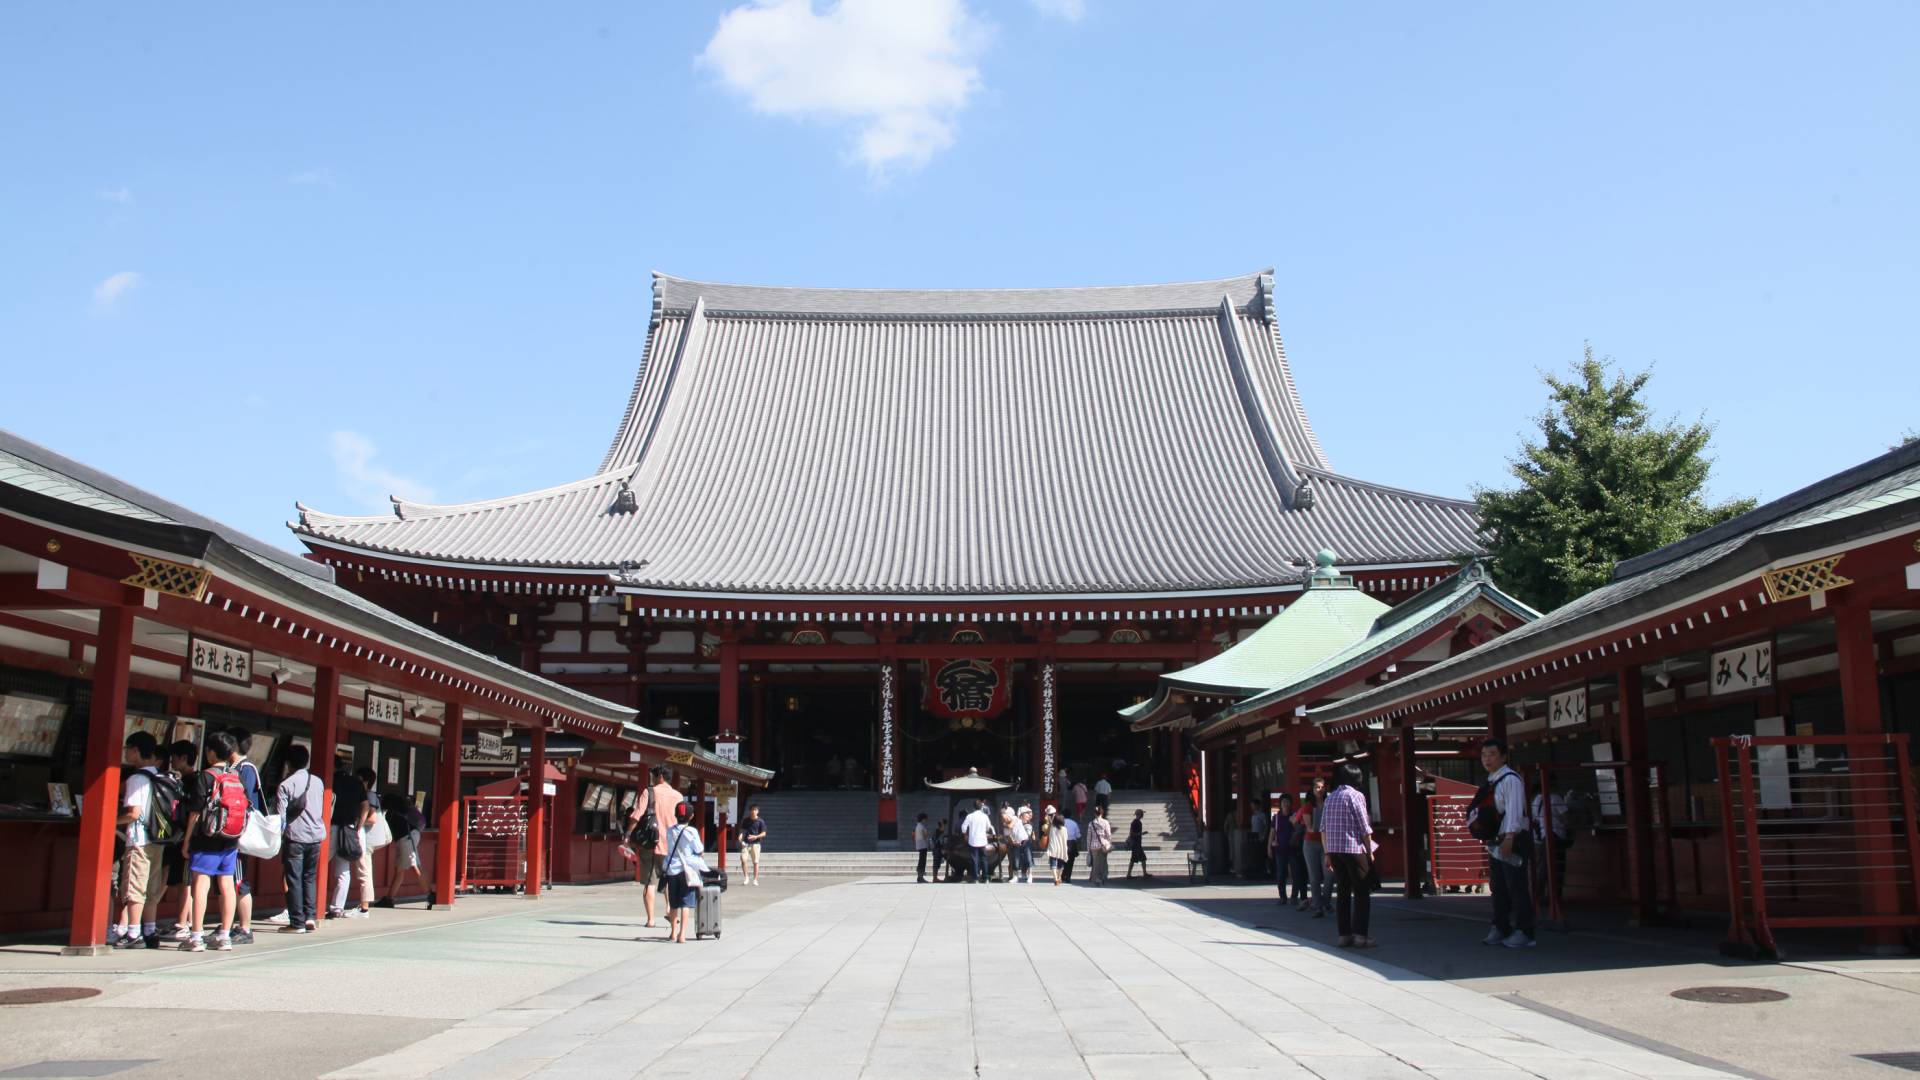 Asakusa. The Official Tokyo Travel Guide, GO TOKYO